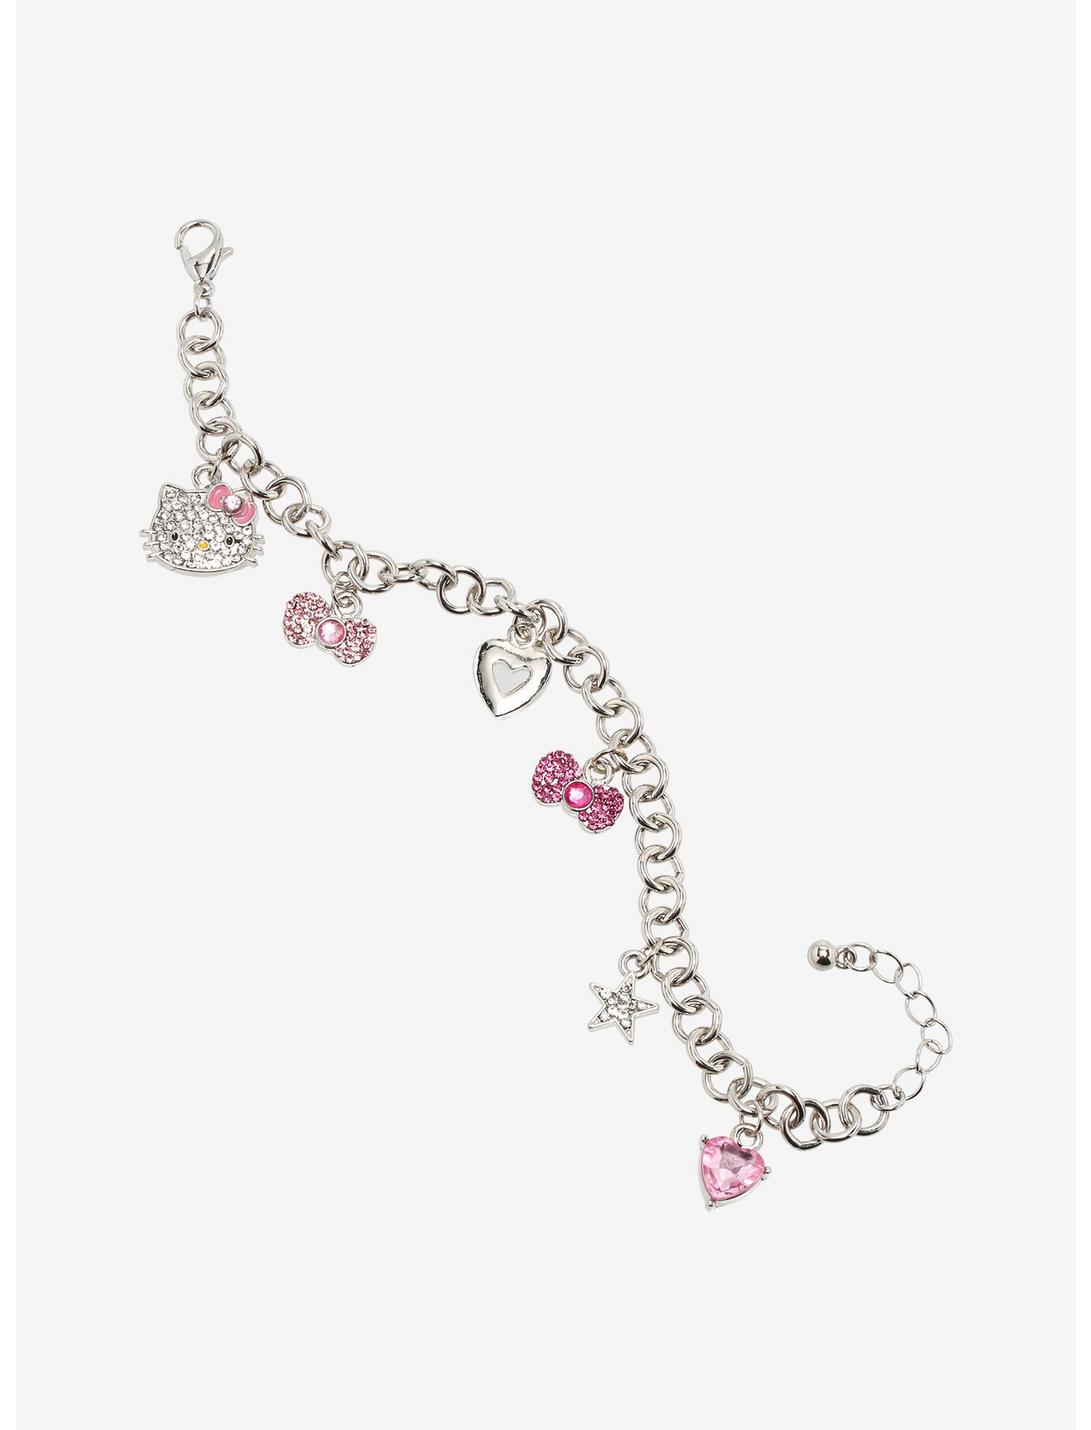 Hello Kitty Bling Charm Bracelet